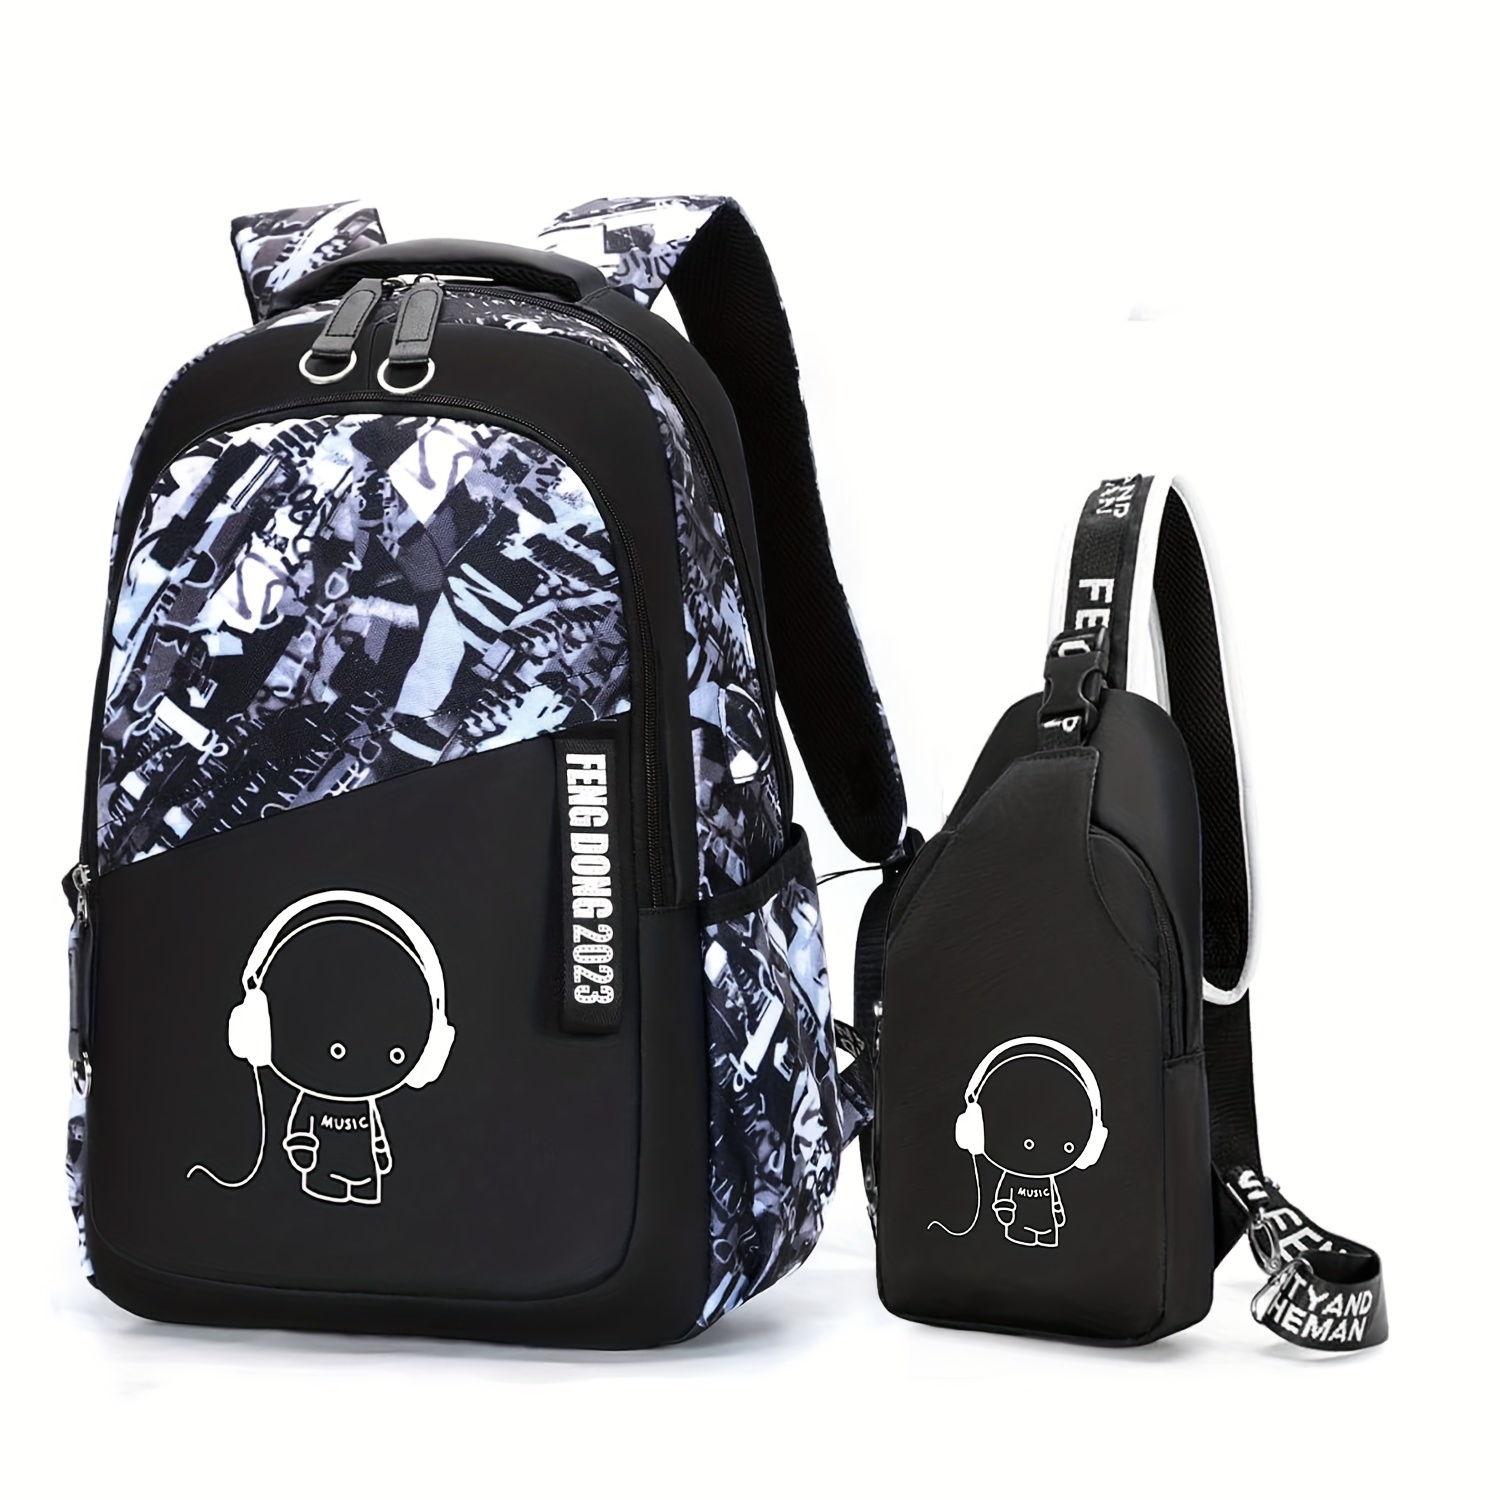 Aphmay Aphmau Backpack Daypack Schoolbag Teen Boys School Book bag